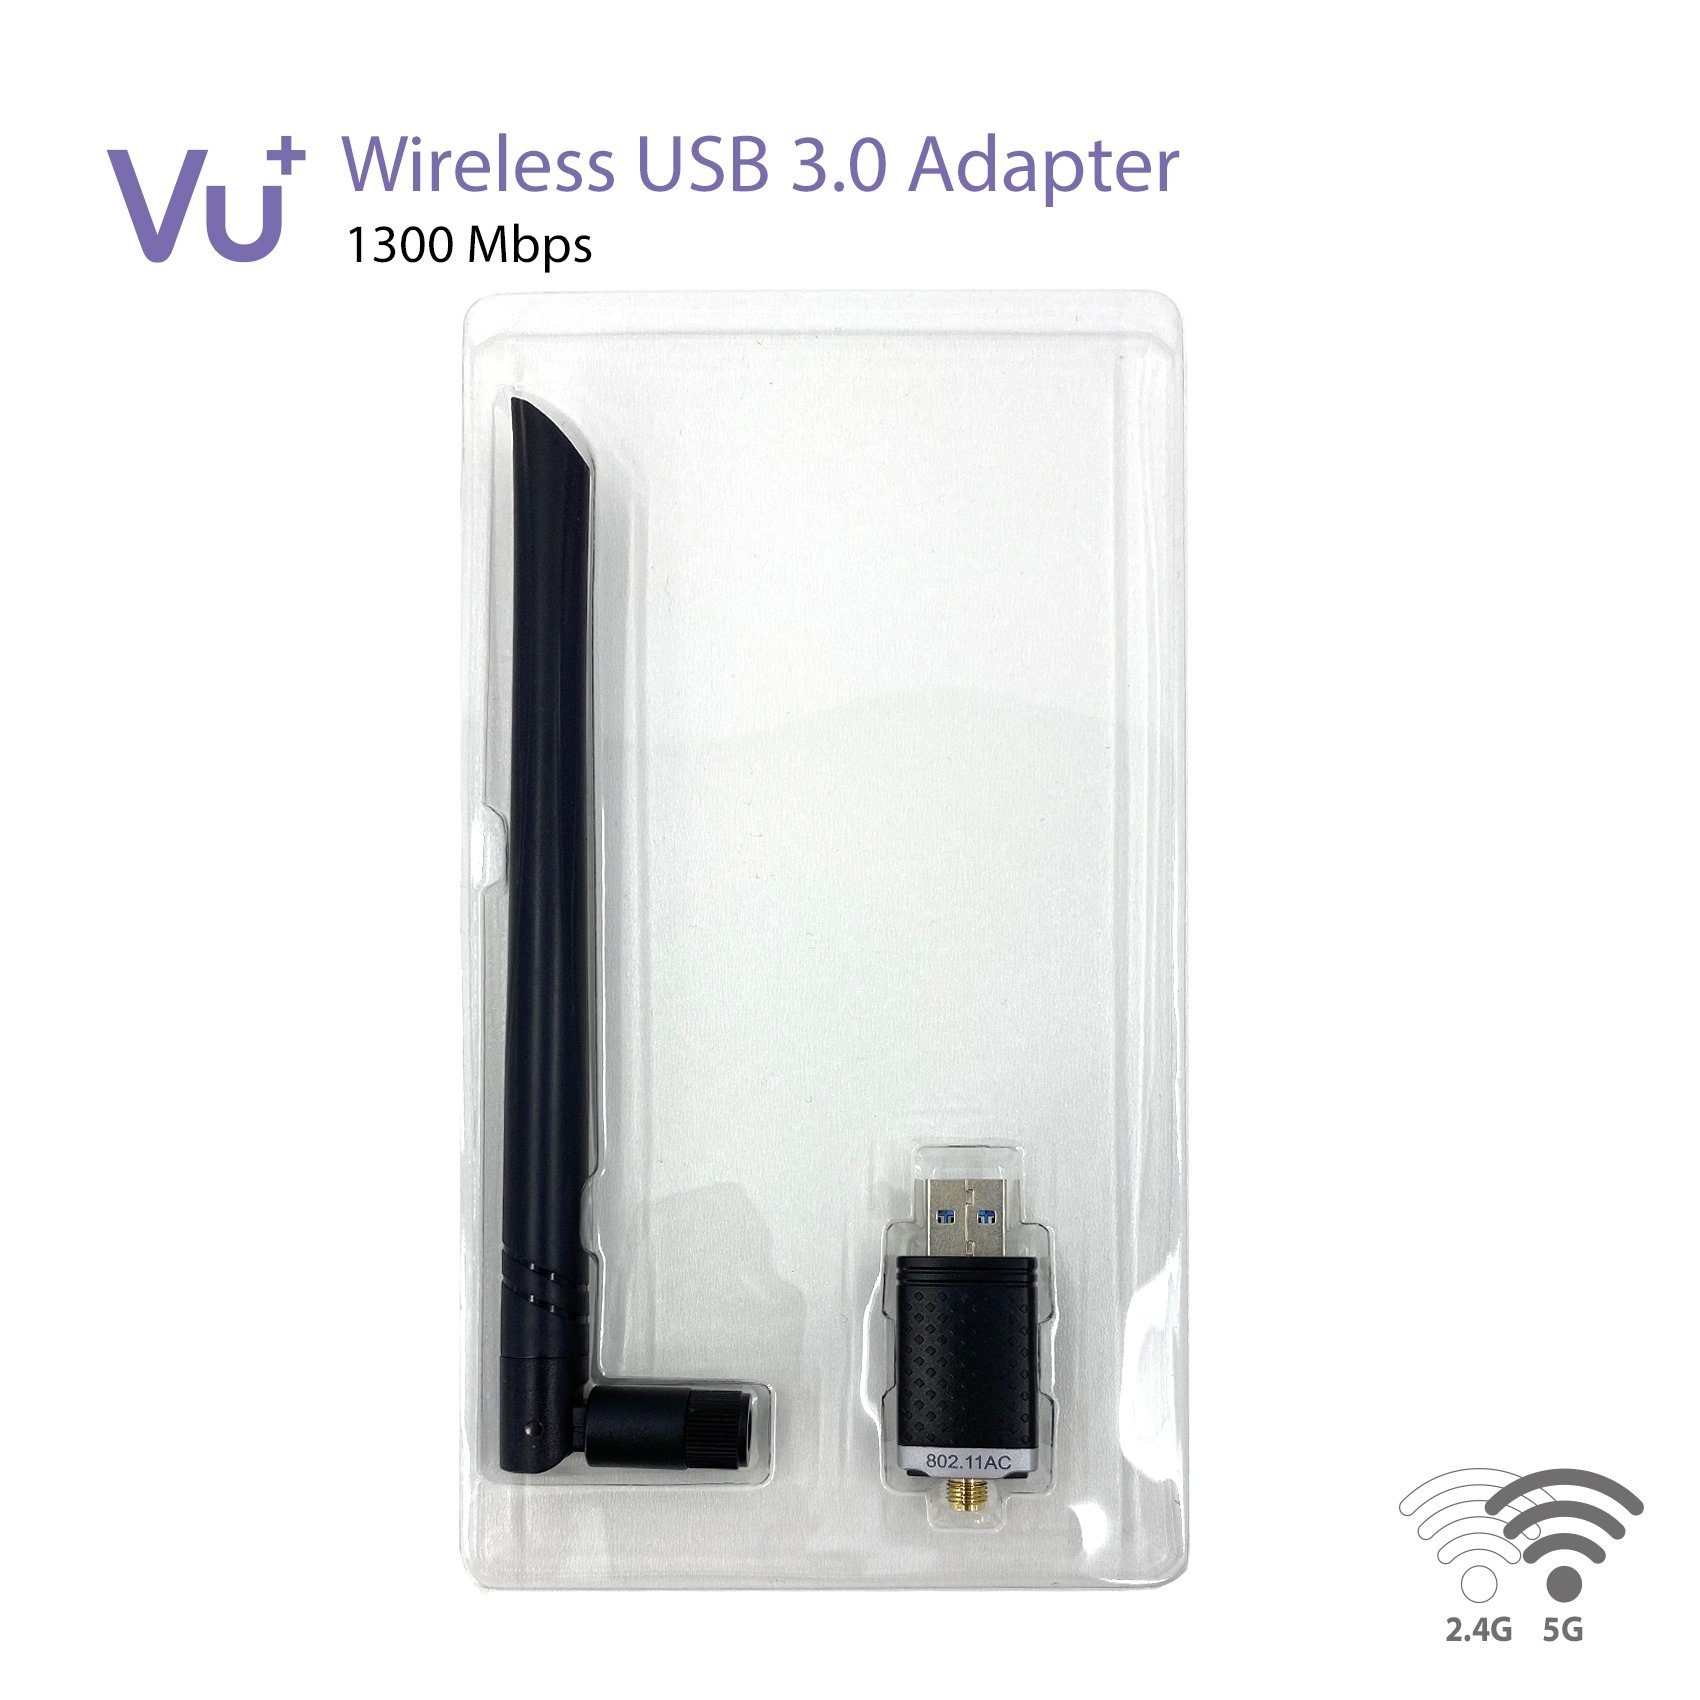 6 dBi VU+ Adapter USB 3.0 Dual Antenne 1300 inkl. Tuner Wireless Band VU+® Mbps